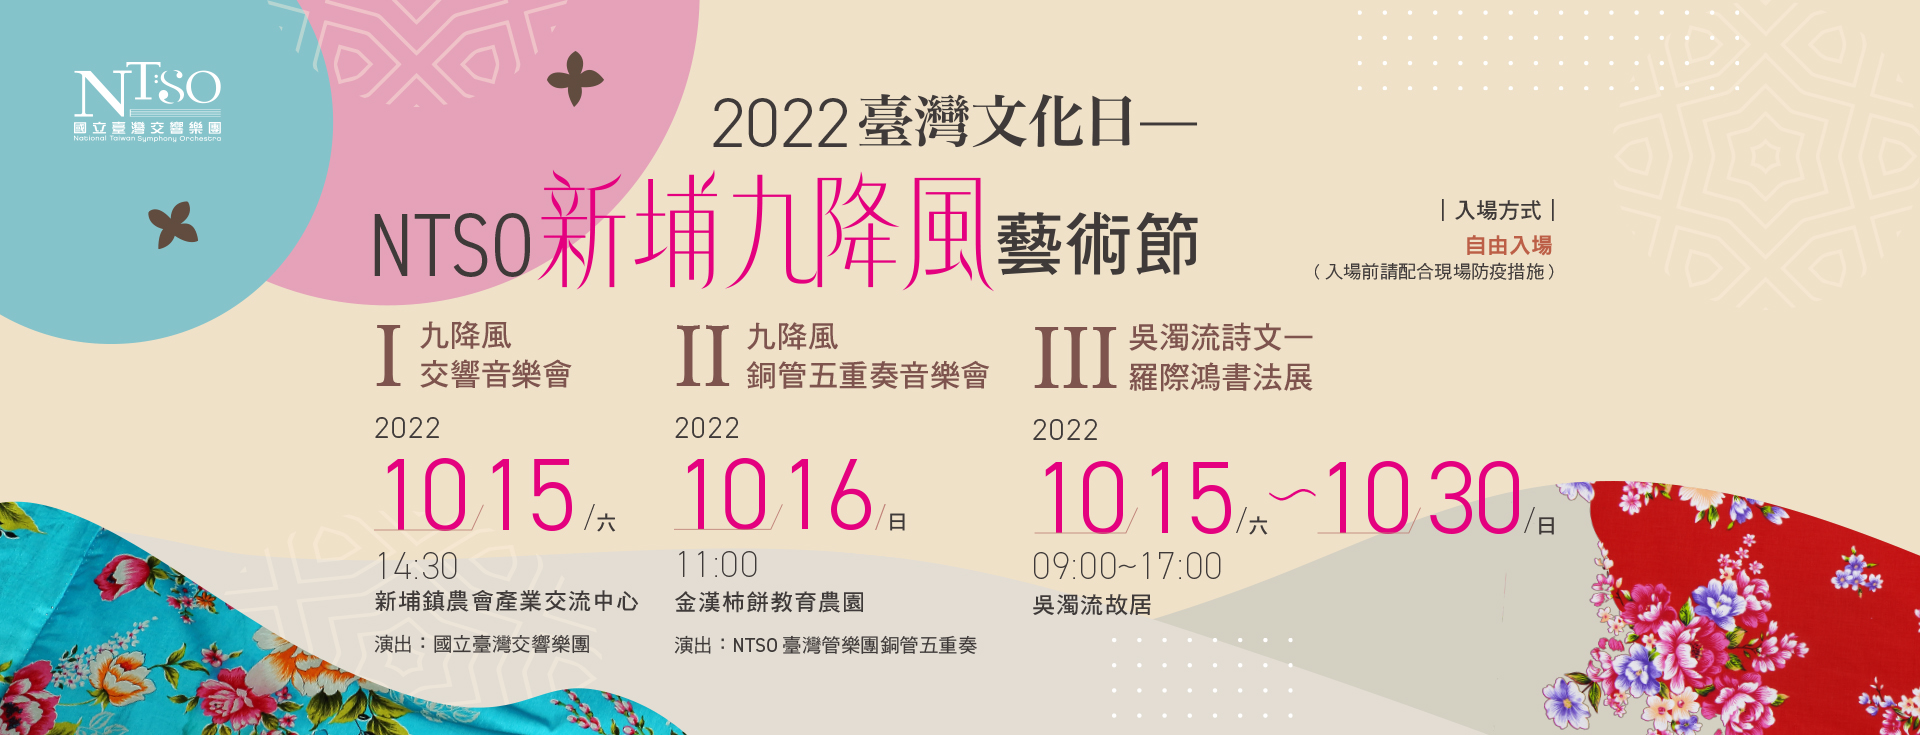 2022臺灣文化日—NTSO新埔九降風藝術節